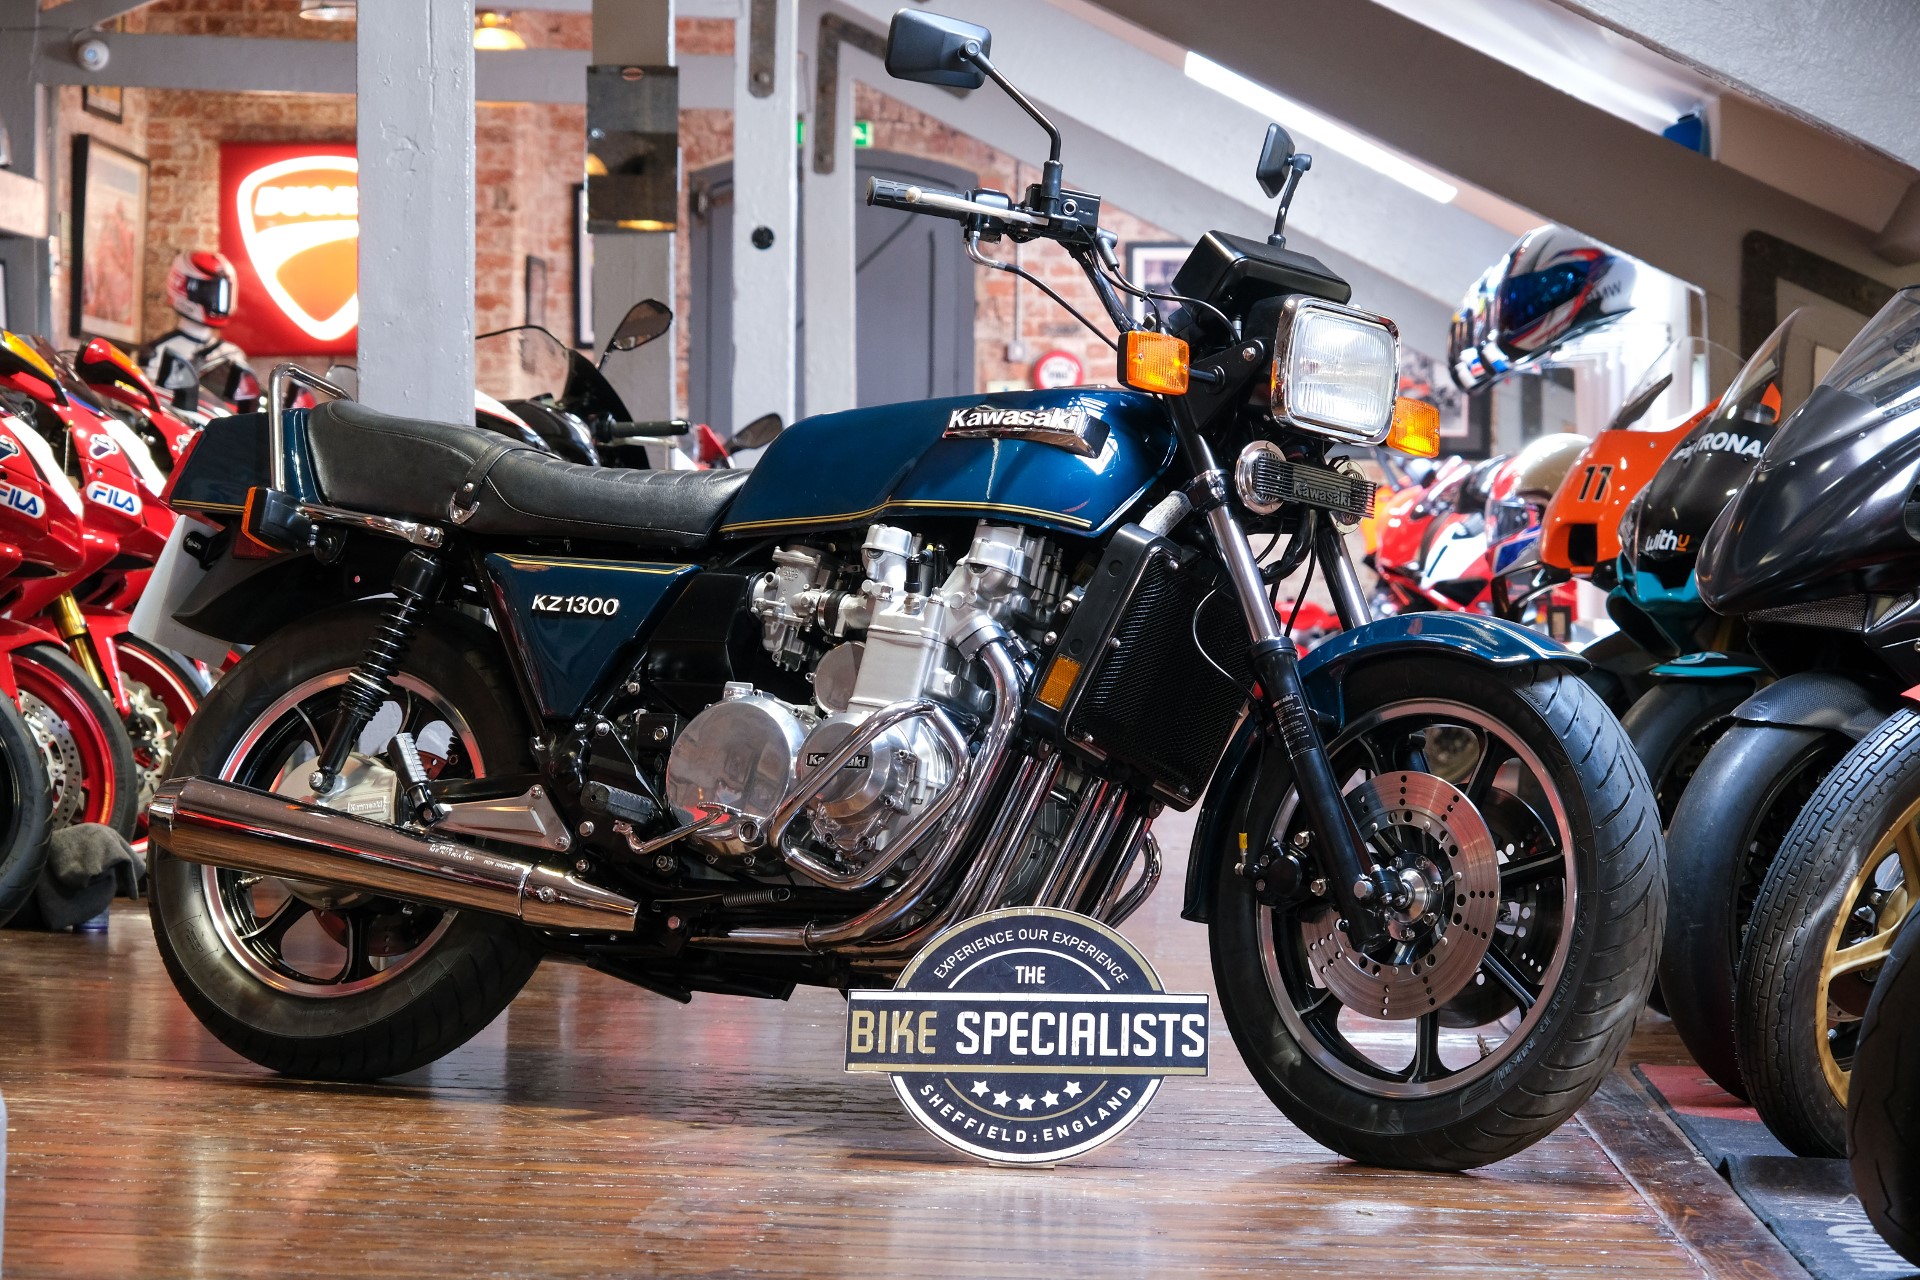 Kawasaki Z1300 | The Bike Specialists | South Yorkshire